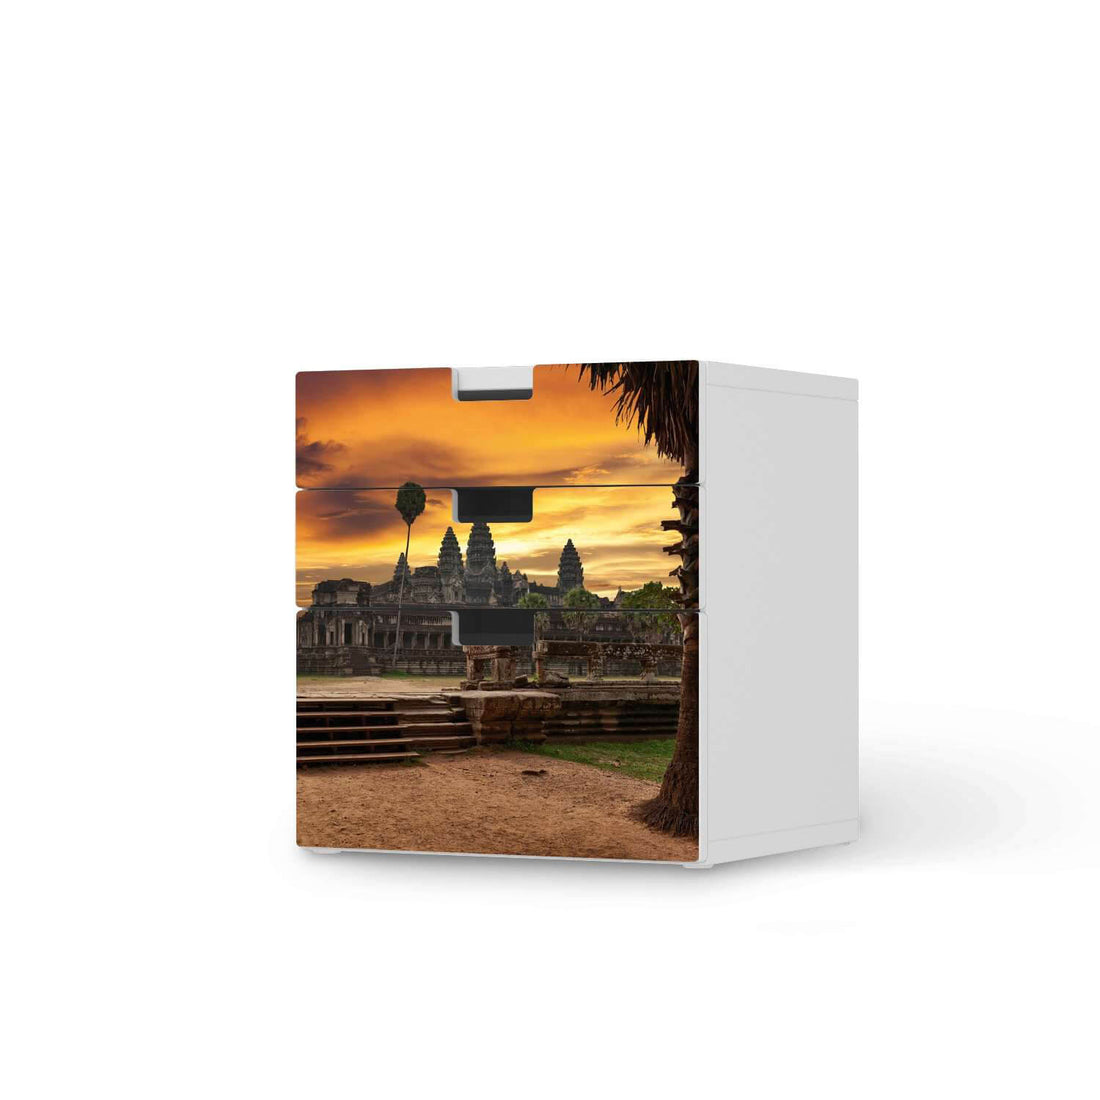 Folie für Möbel Angkor Wat - IKEA Stuva Kommode - 3 Schubladen (Kombination 1)  - weiss